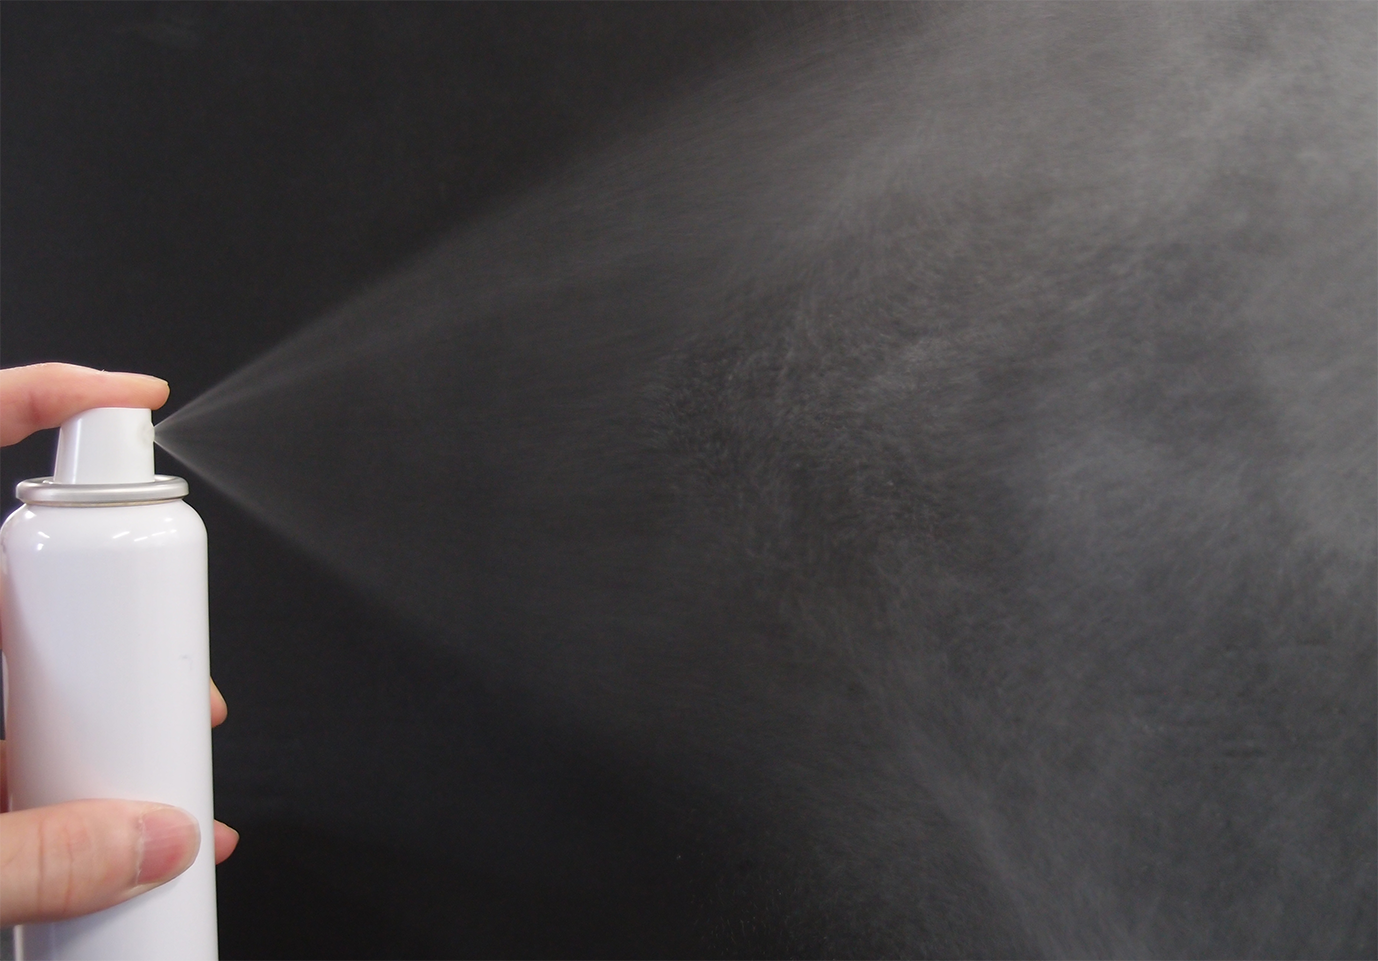 セルロースナノファイバーを添加した本スプレー剤の噴霧の様子